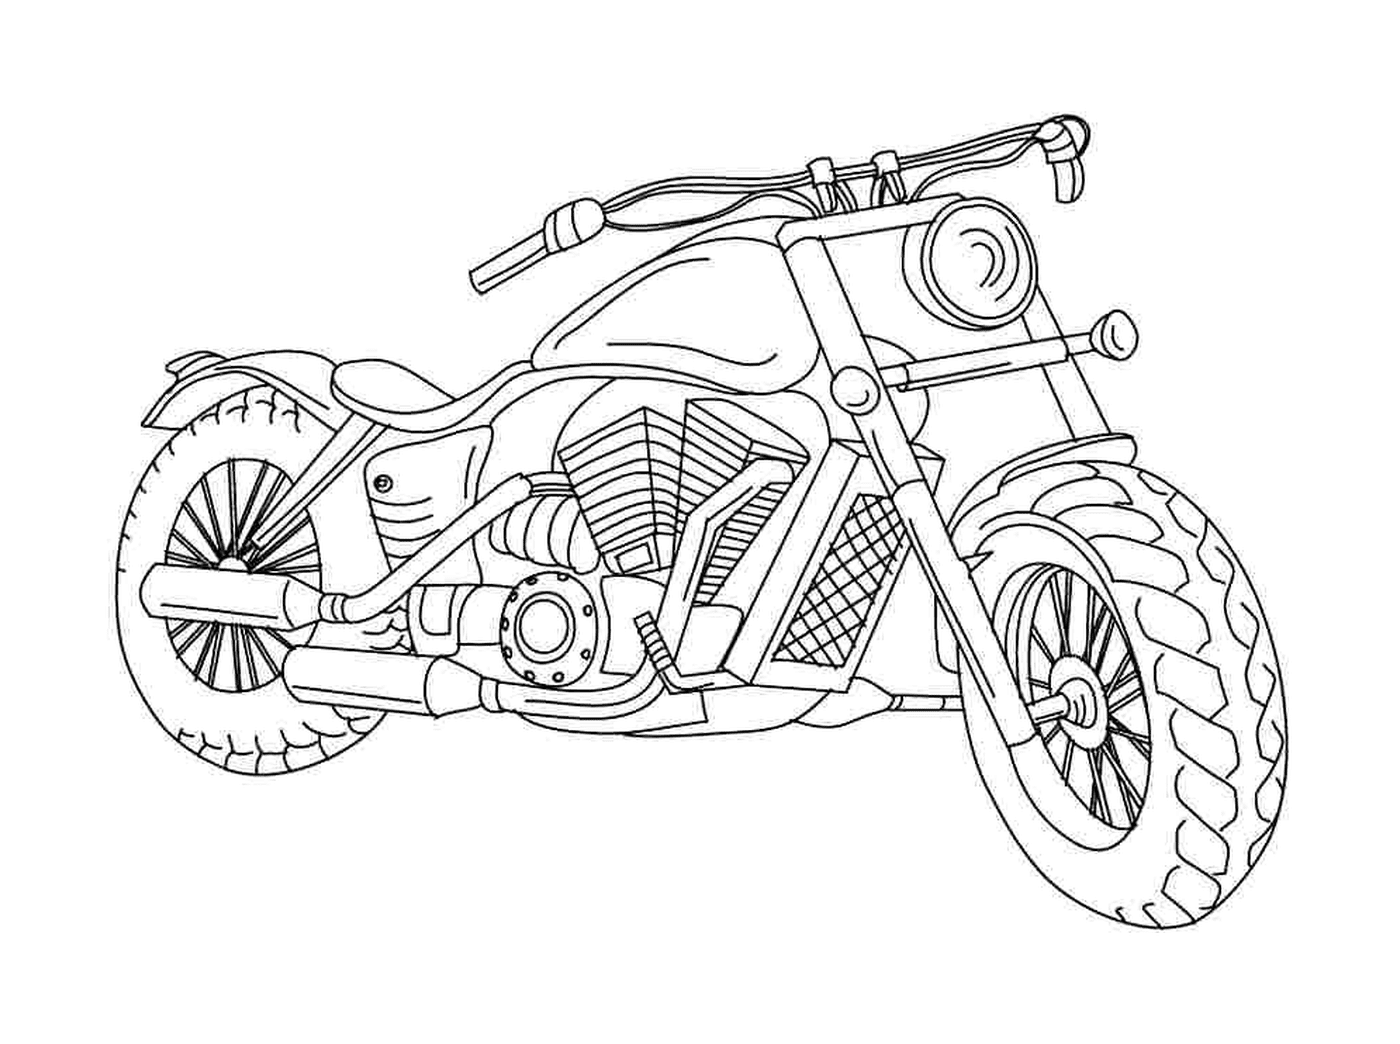  Número da motocicleta 42 